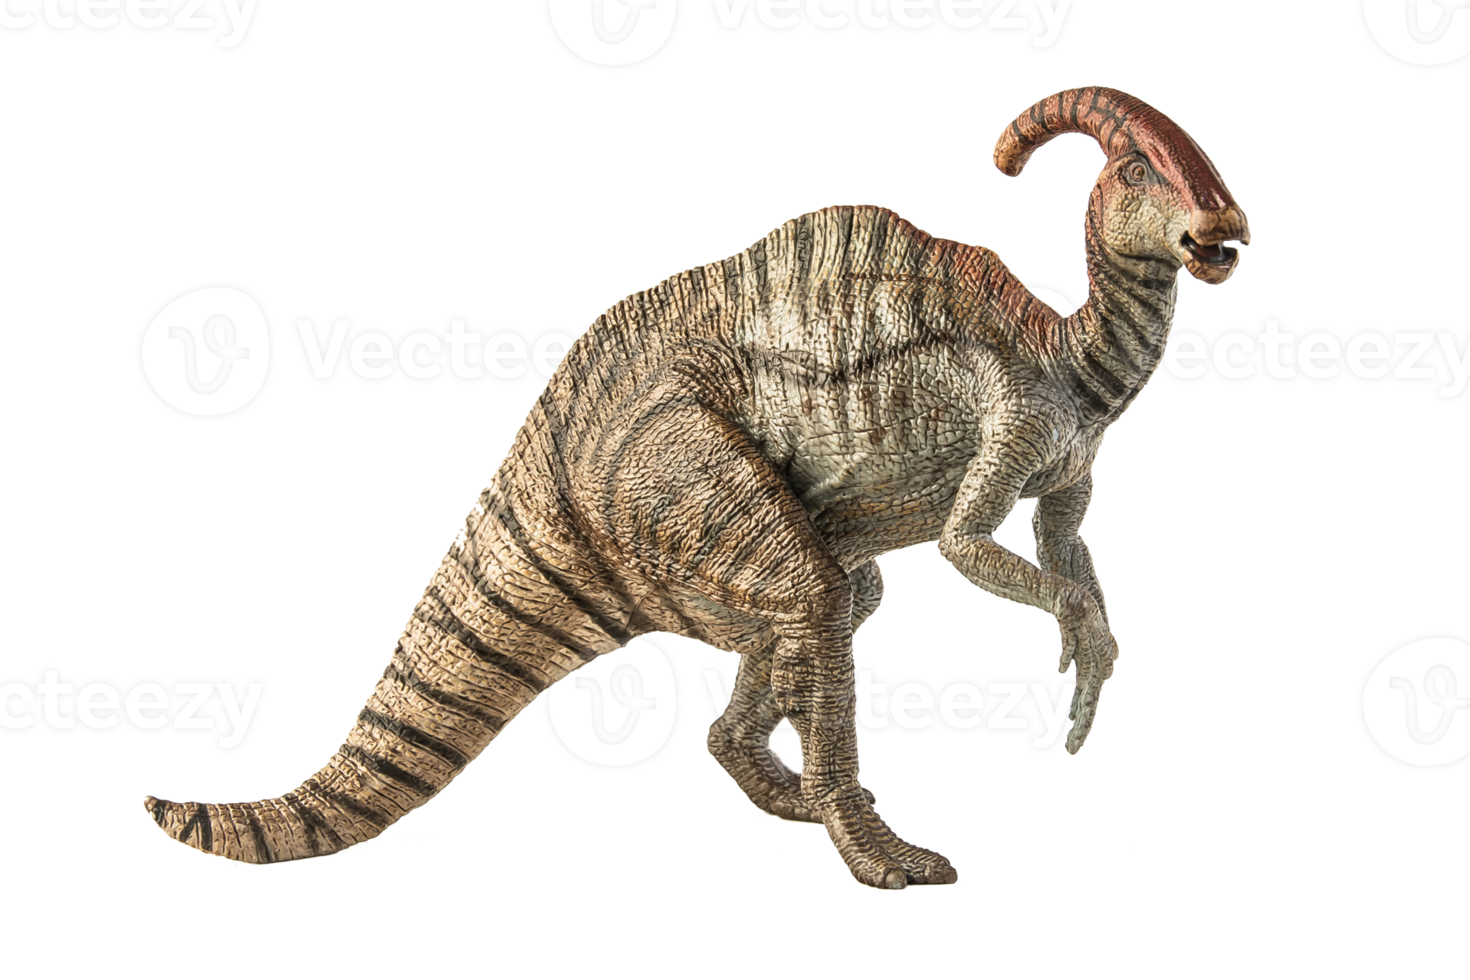 dinosaurio parasaurolophus sobre fondo blanco png